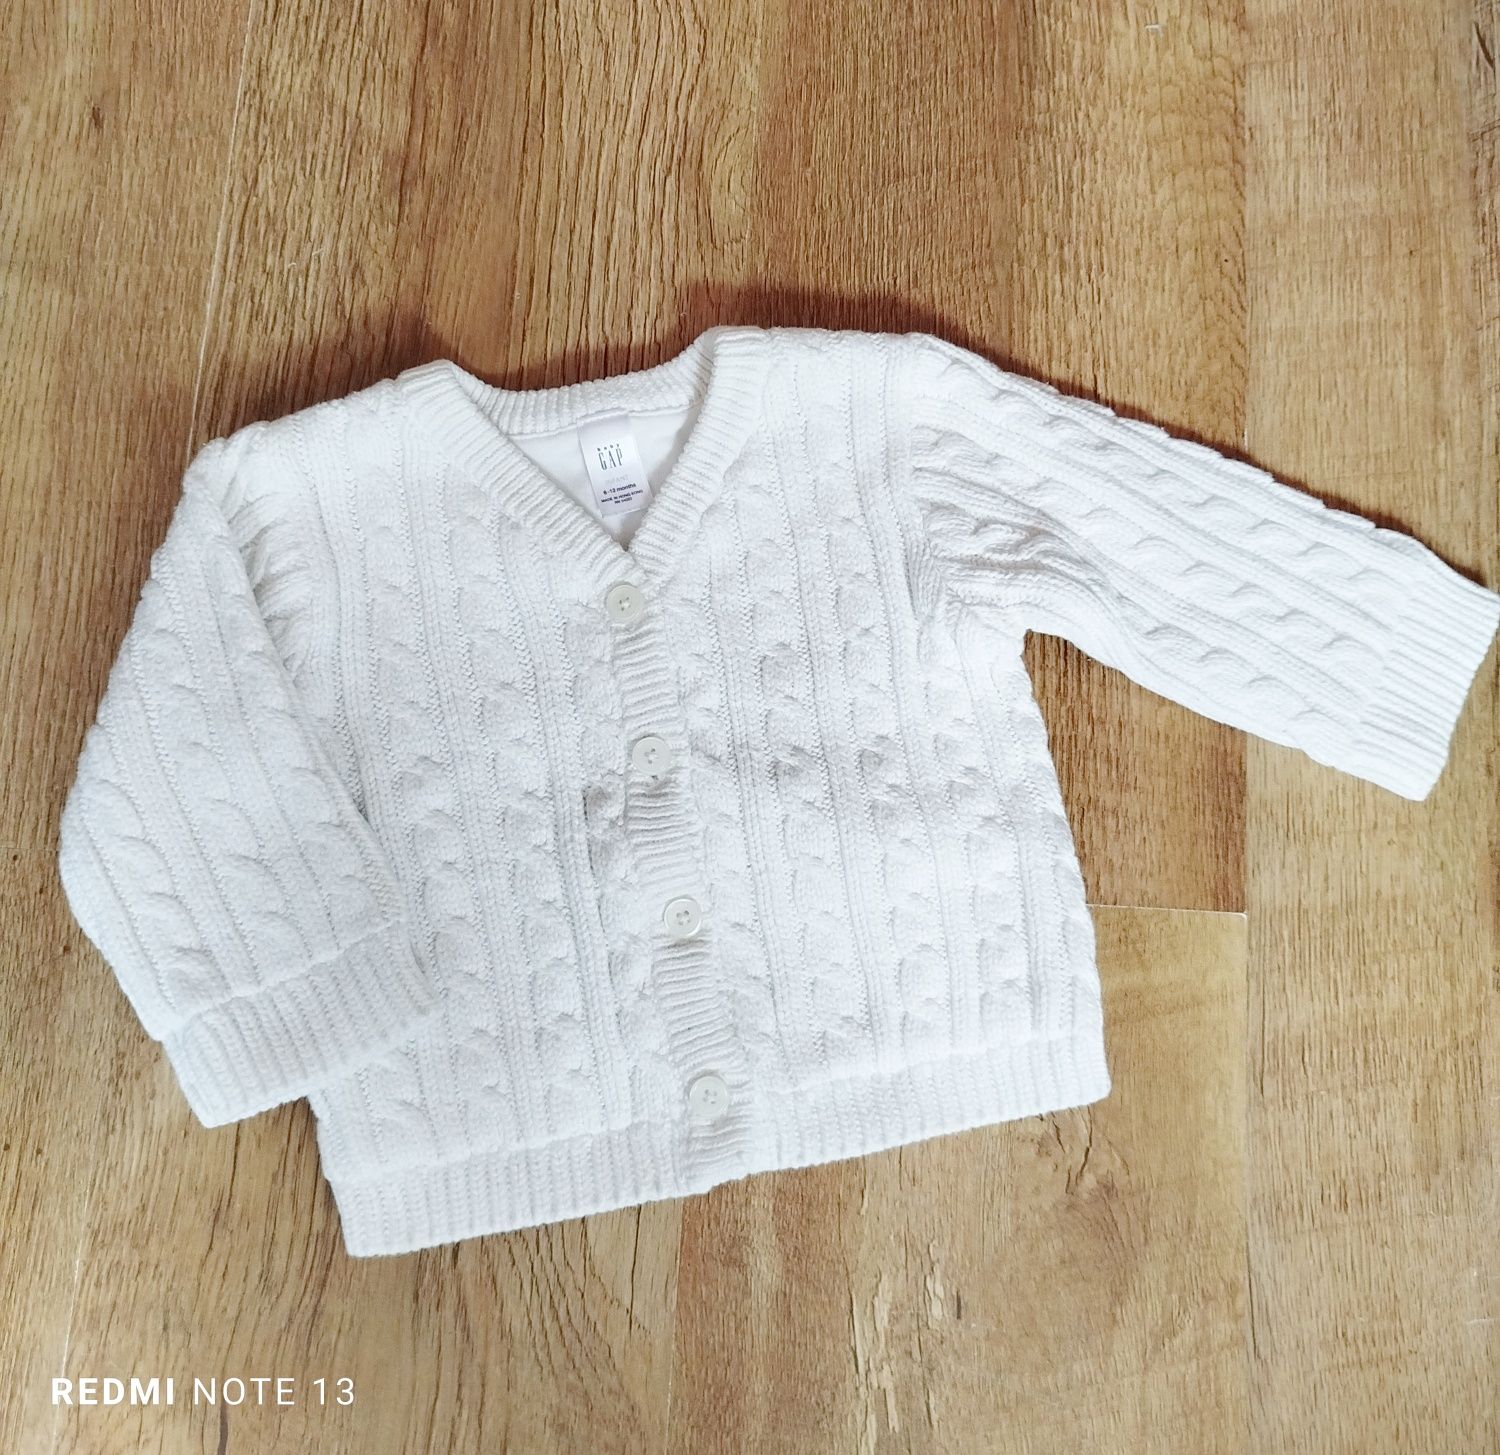 GAP niemowlęcy biały sweterek zapinany na guziki rozm. 74 (6-12msc)